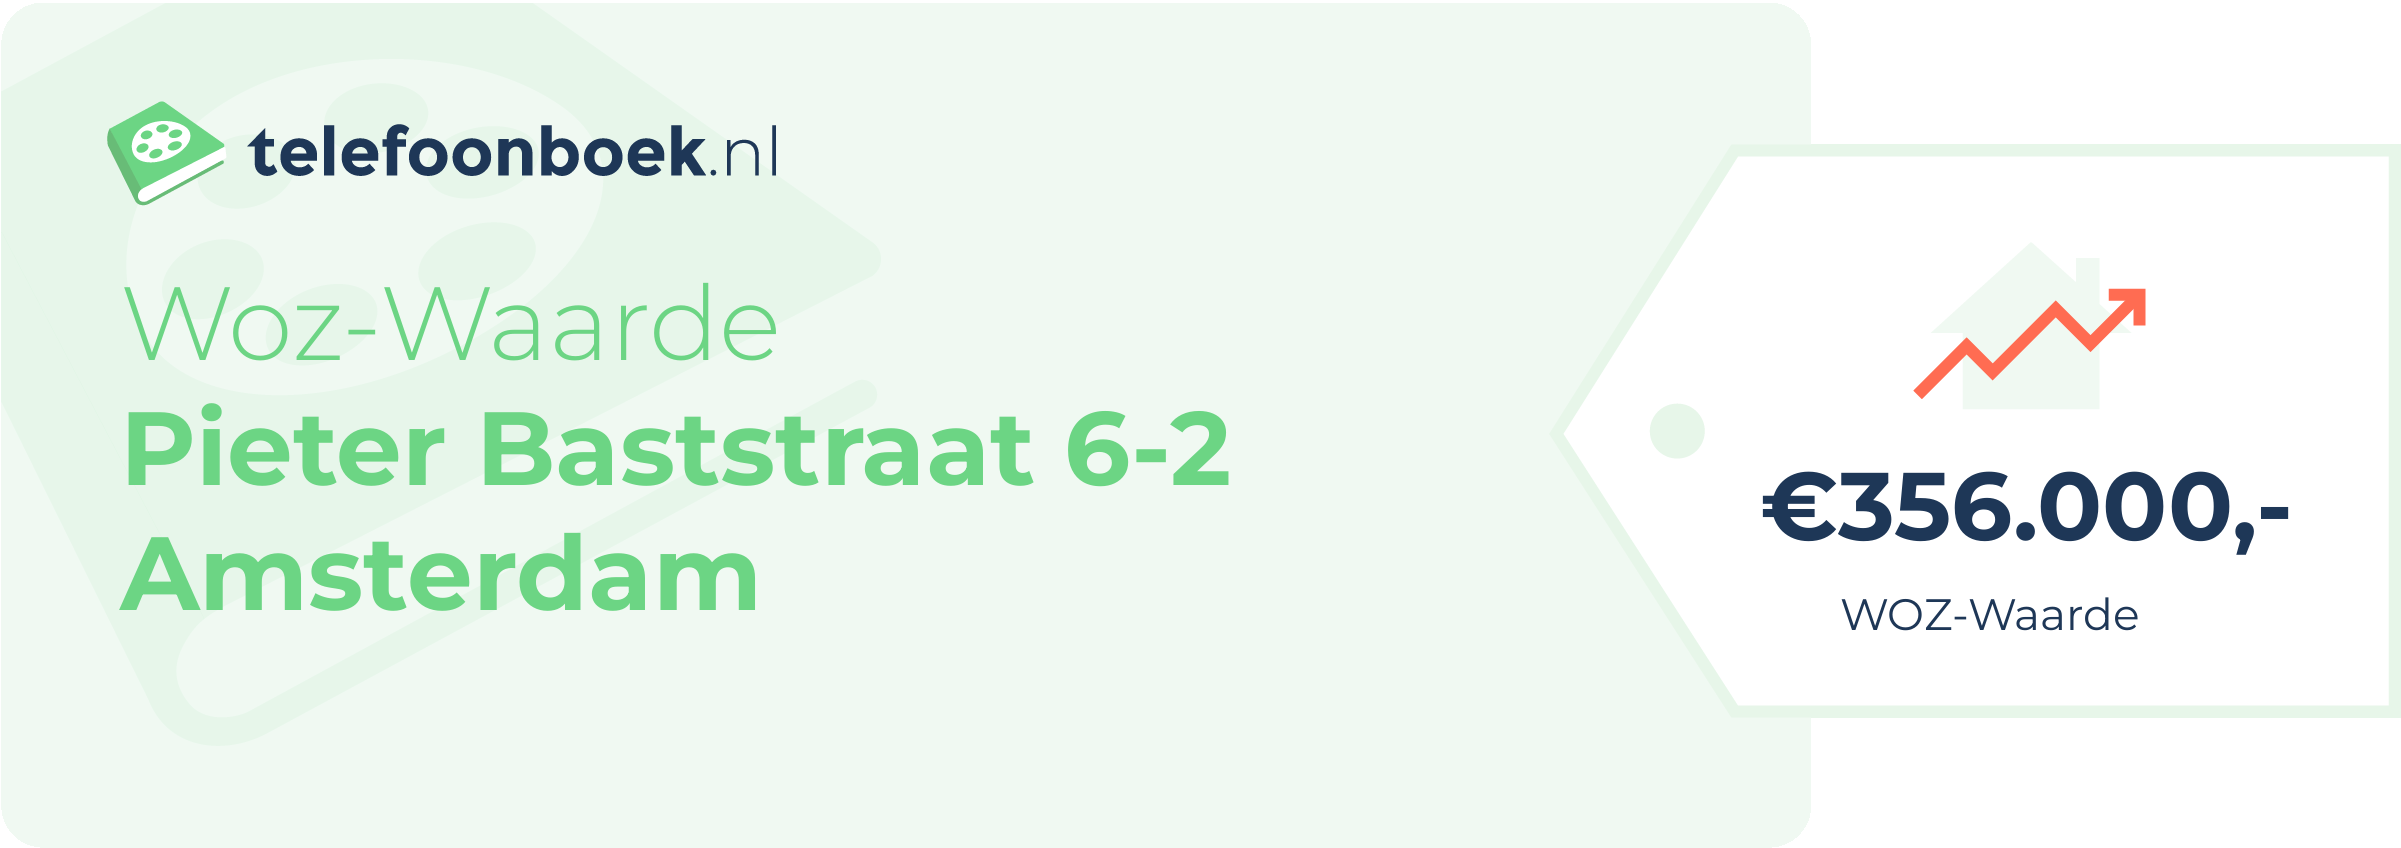 WOZ-waarde Pieter Baststraat 6-2 Amsterdam